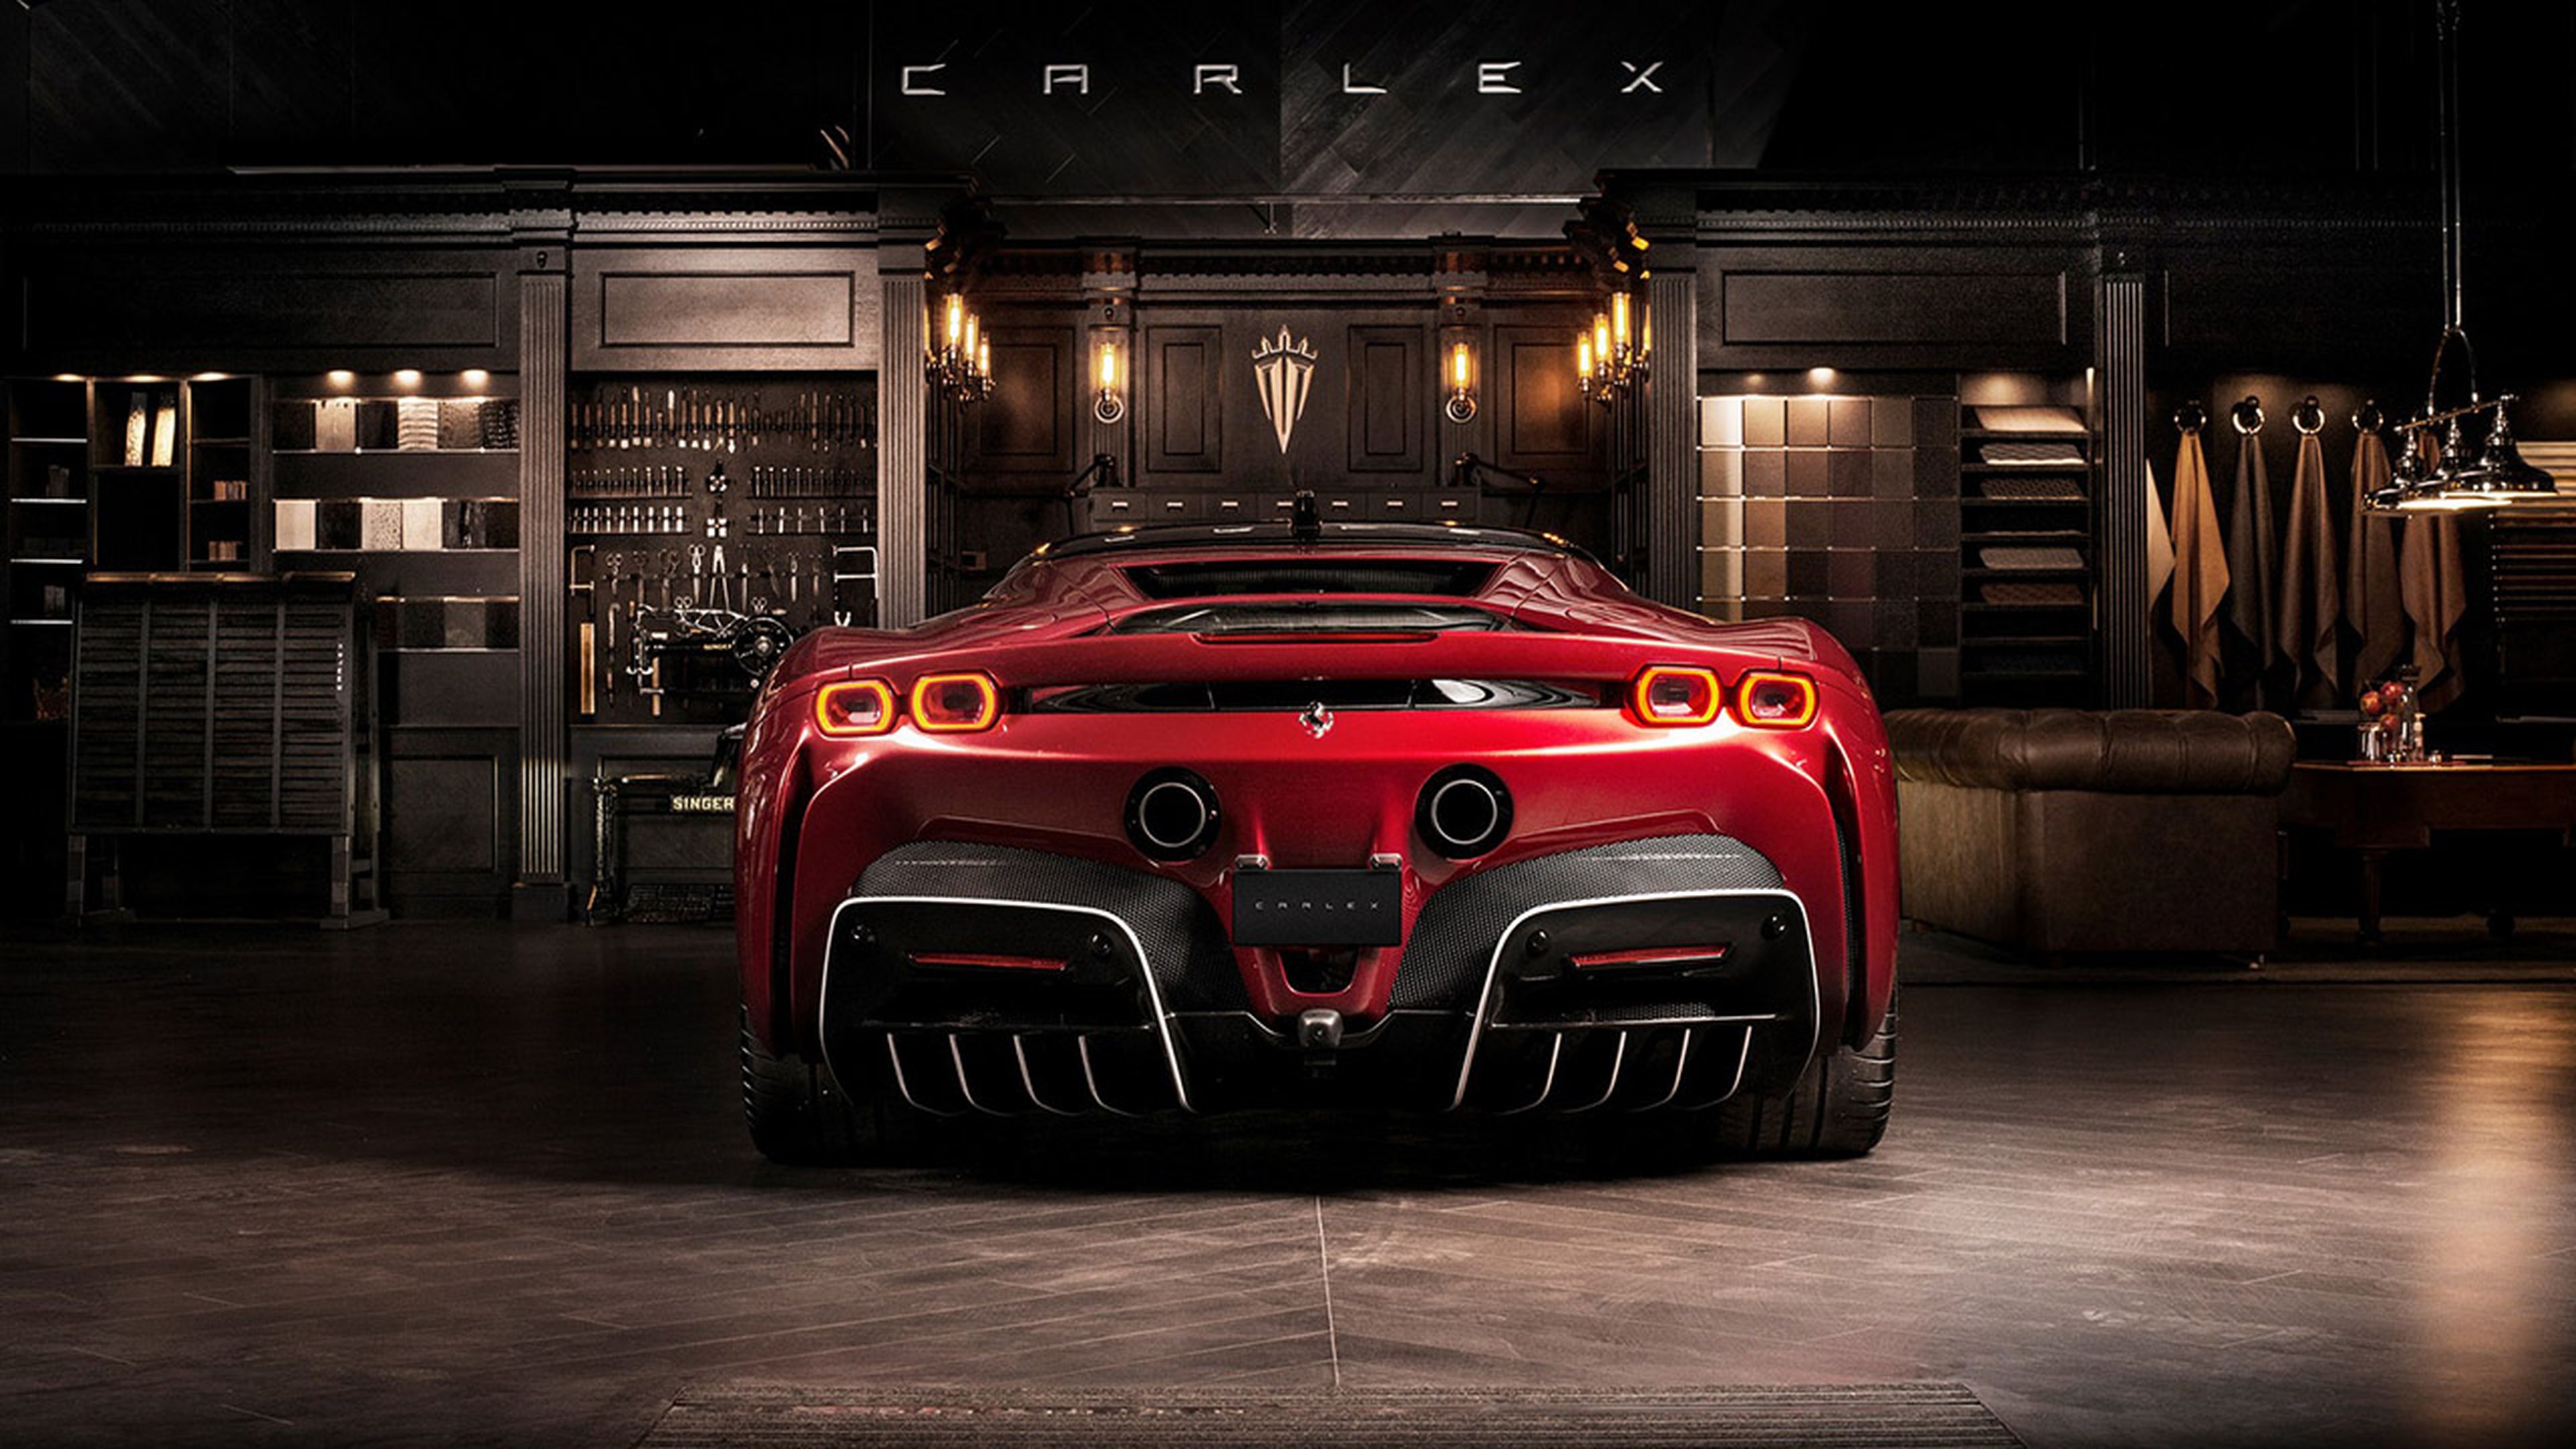 Ferrari SF90 Stradale by Carlex Design (2)